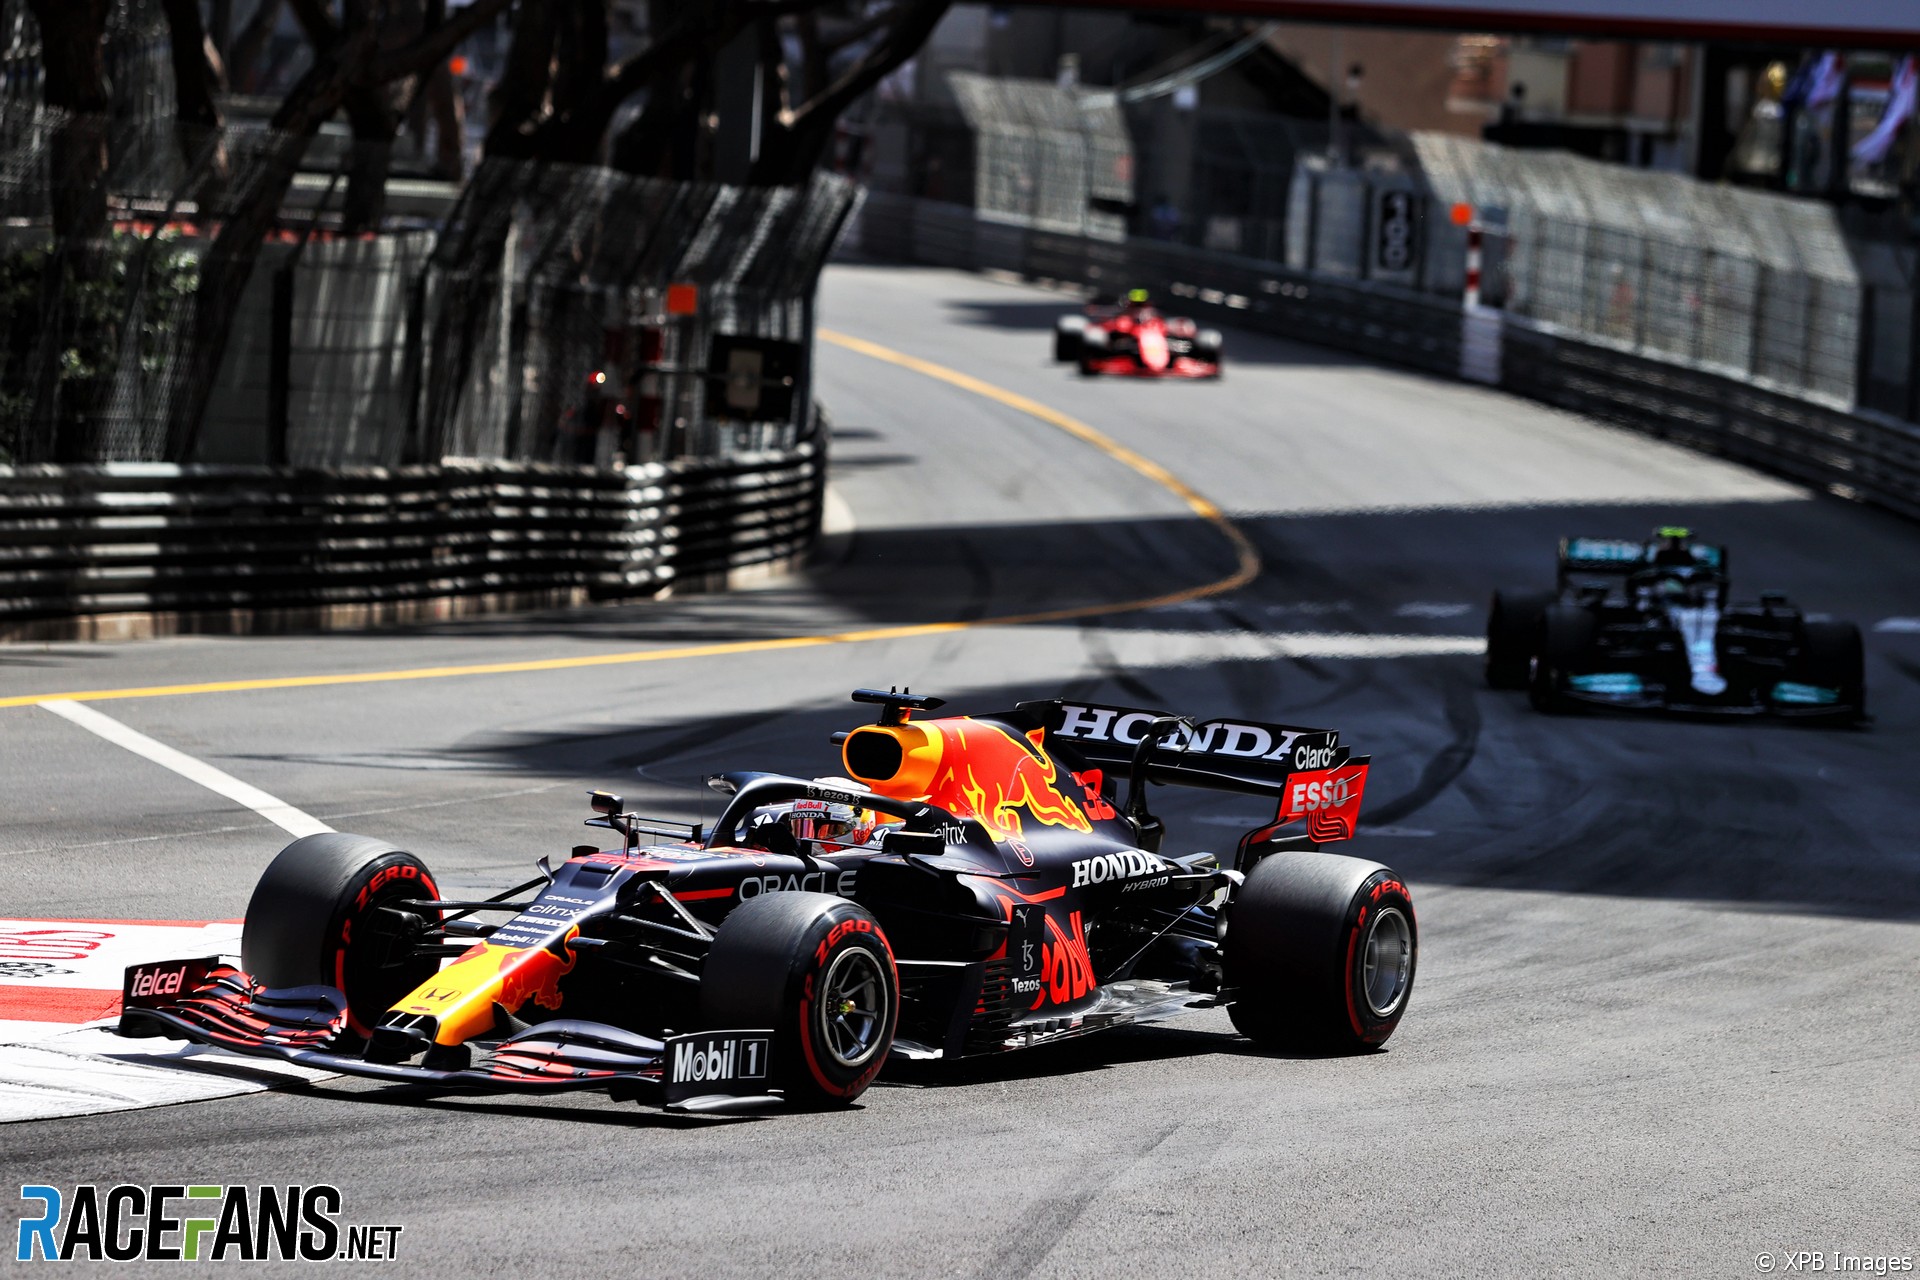 Max Verstappen, Red Bull, Monaco, 2021 · RaceFans